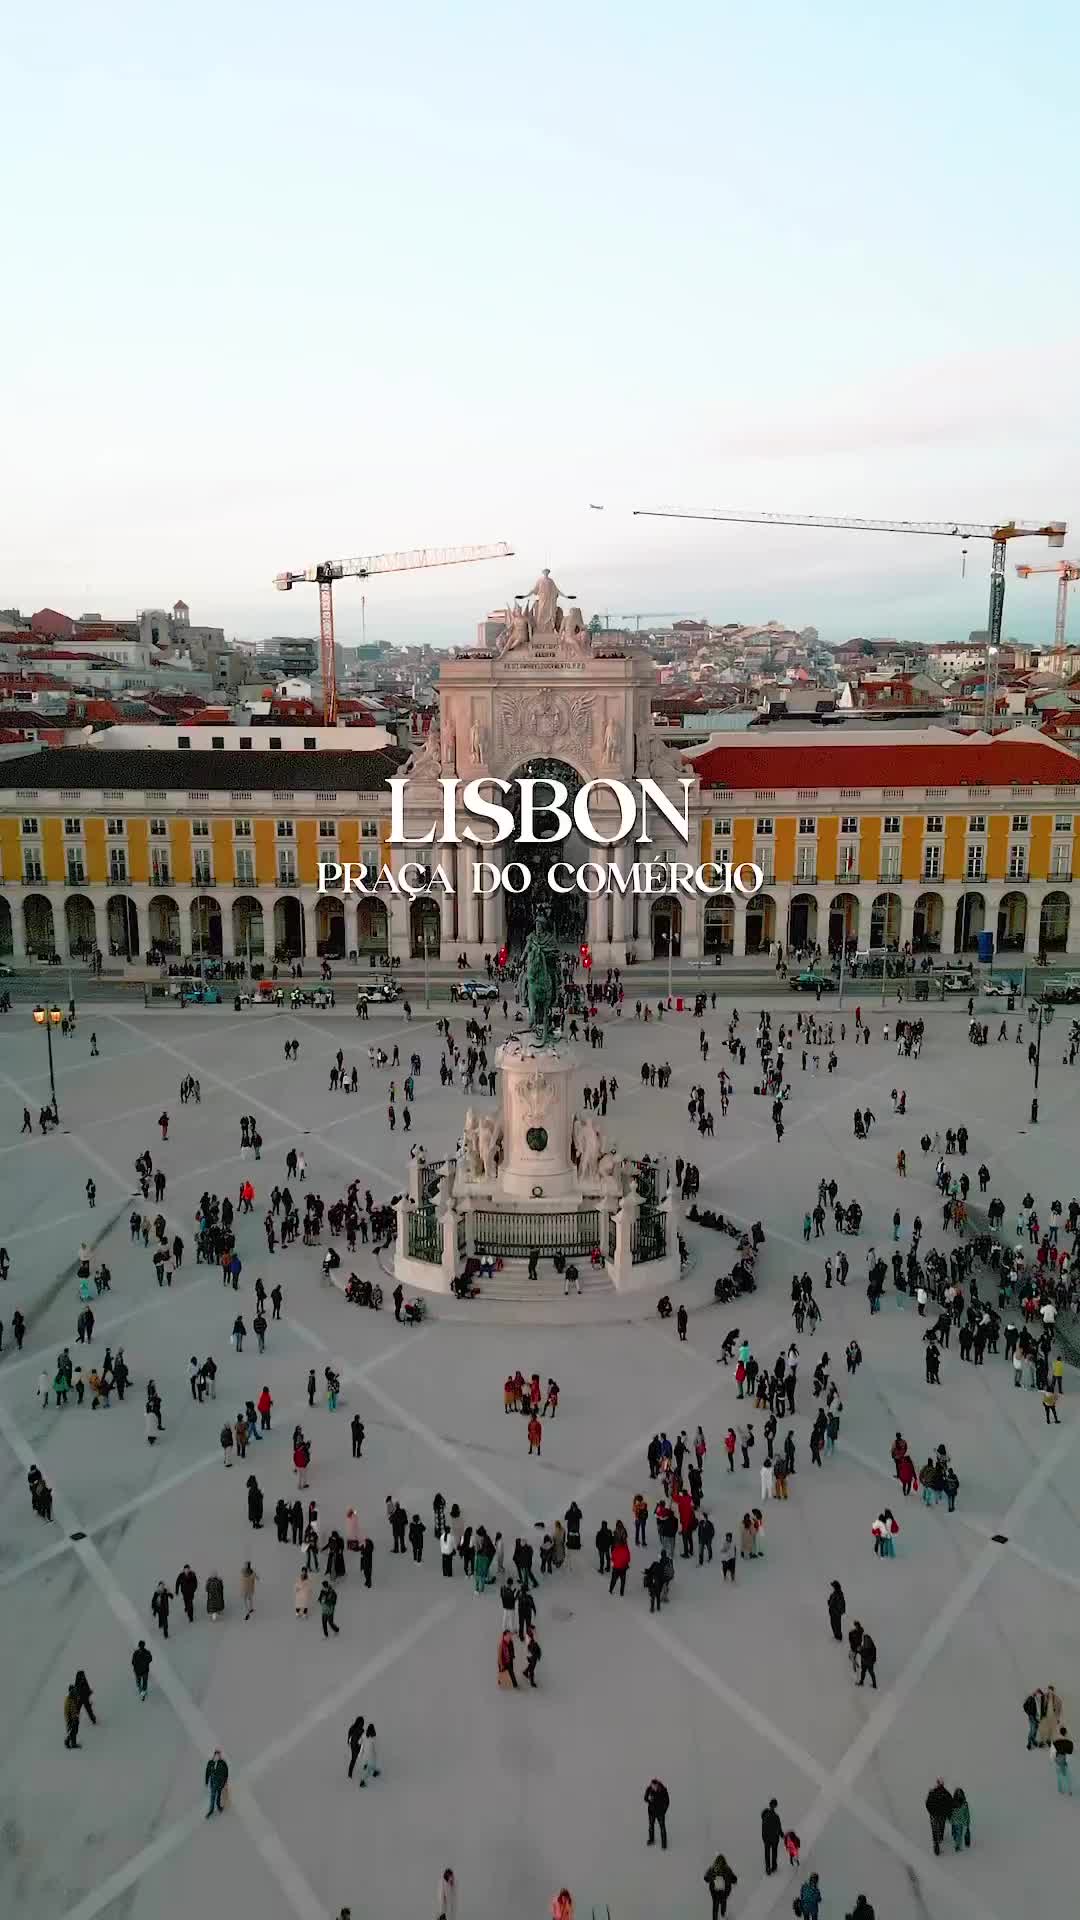 Discover Lisbon’s Praça do Comércio Magic